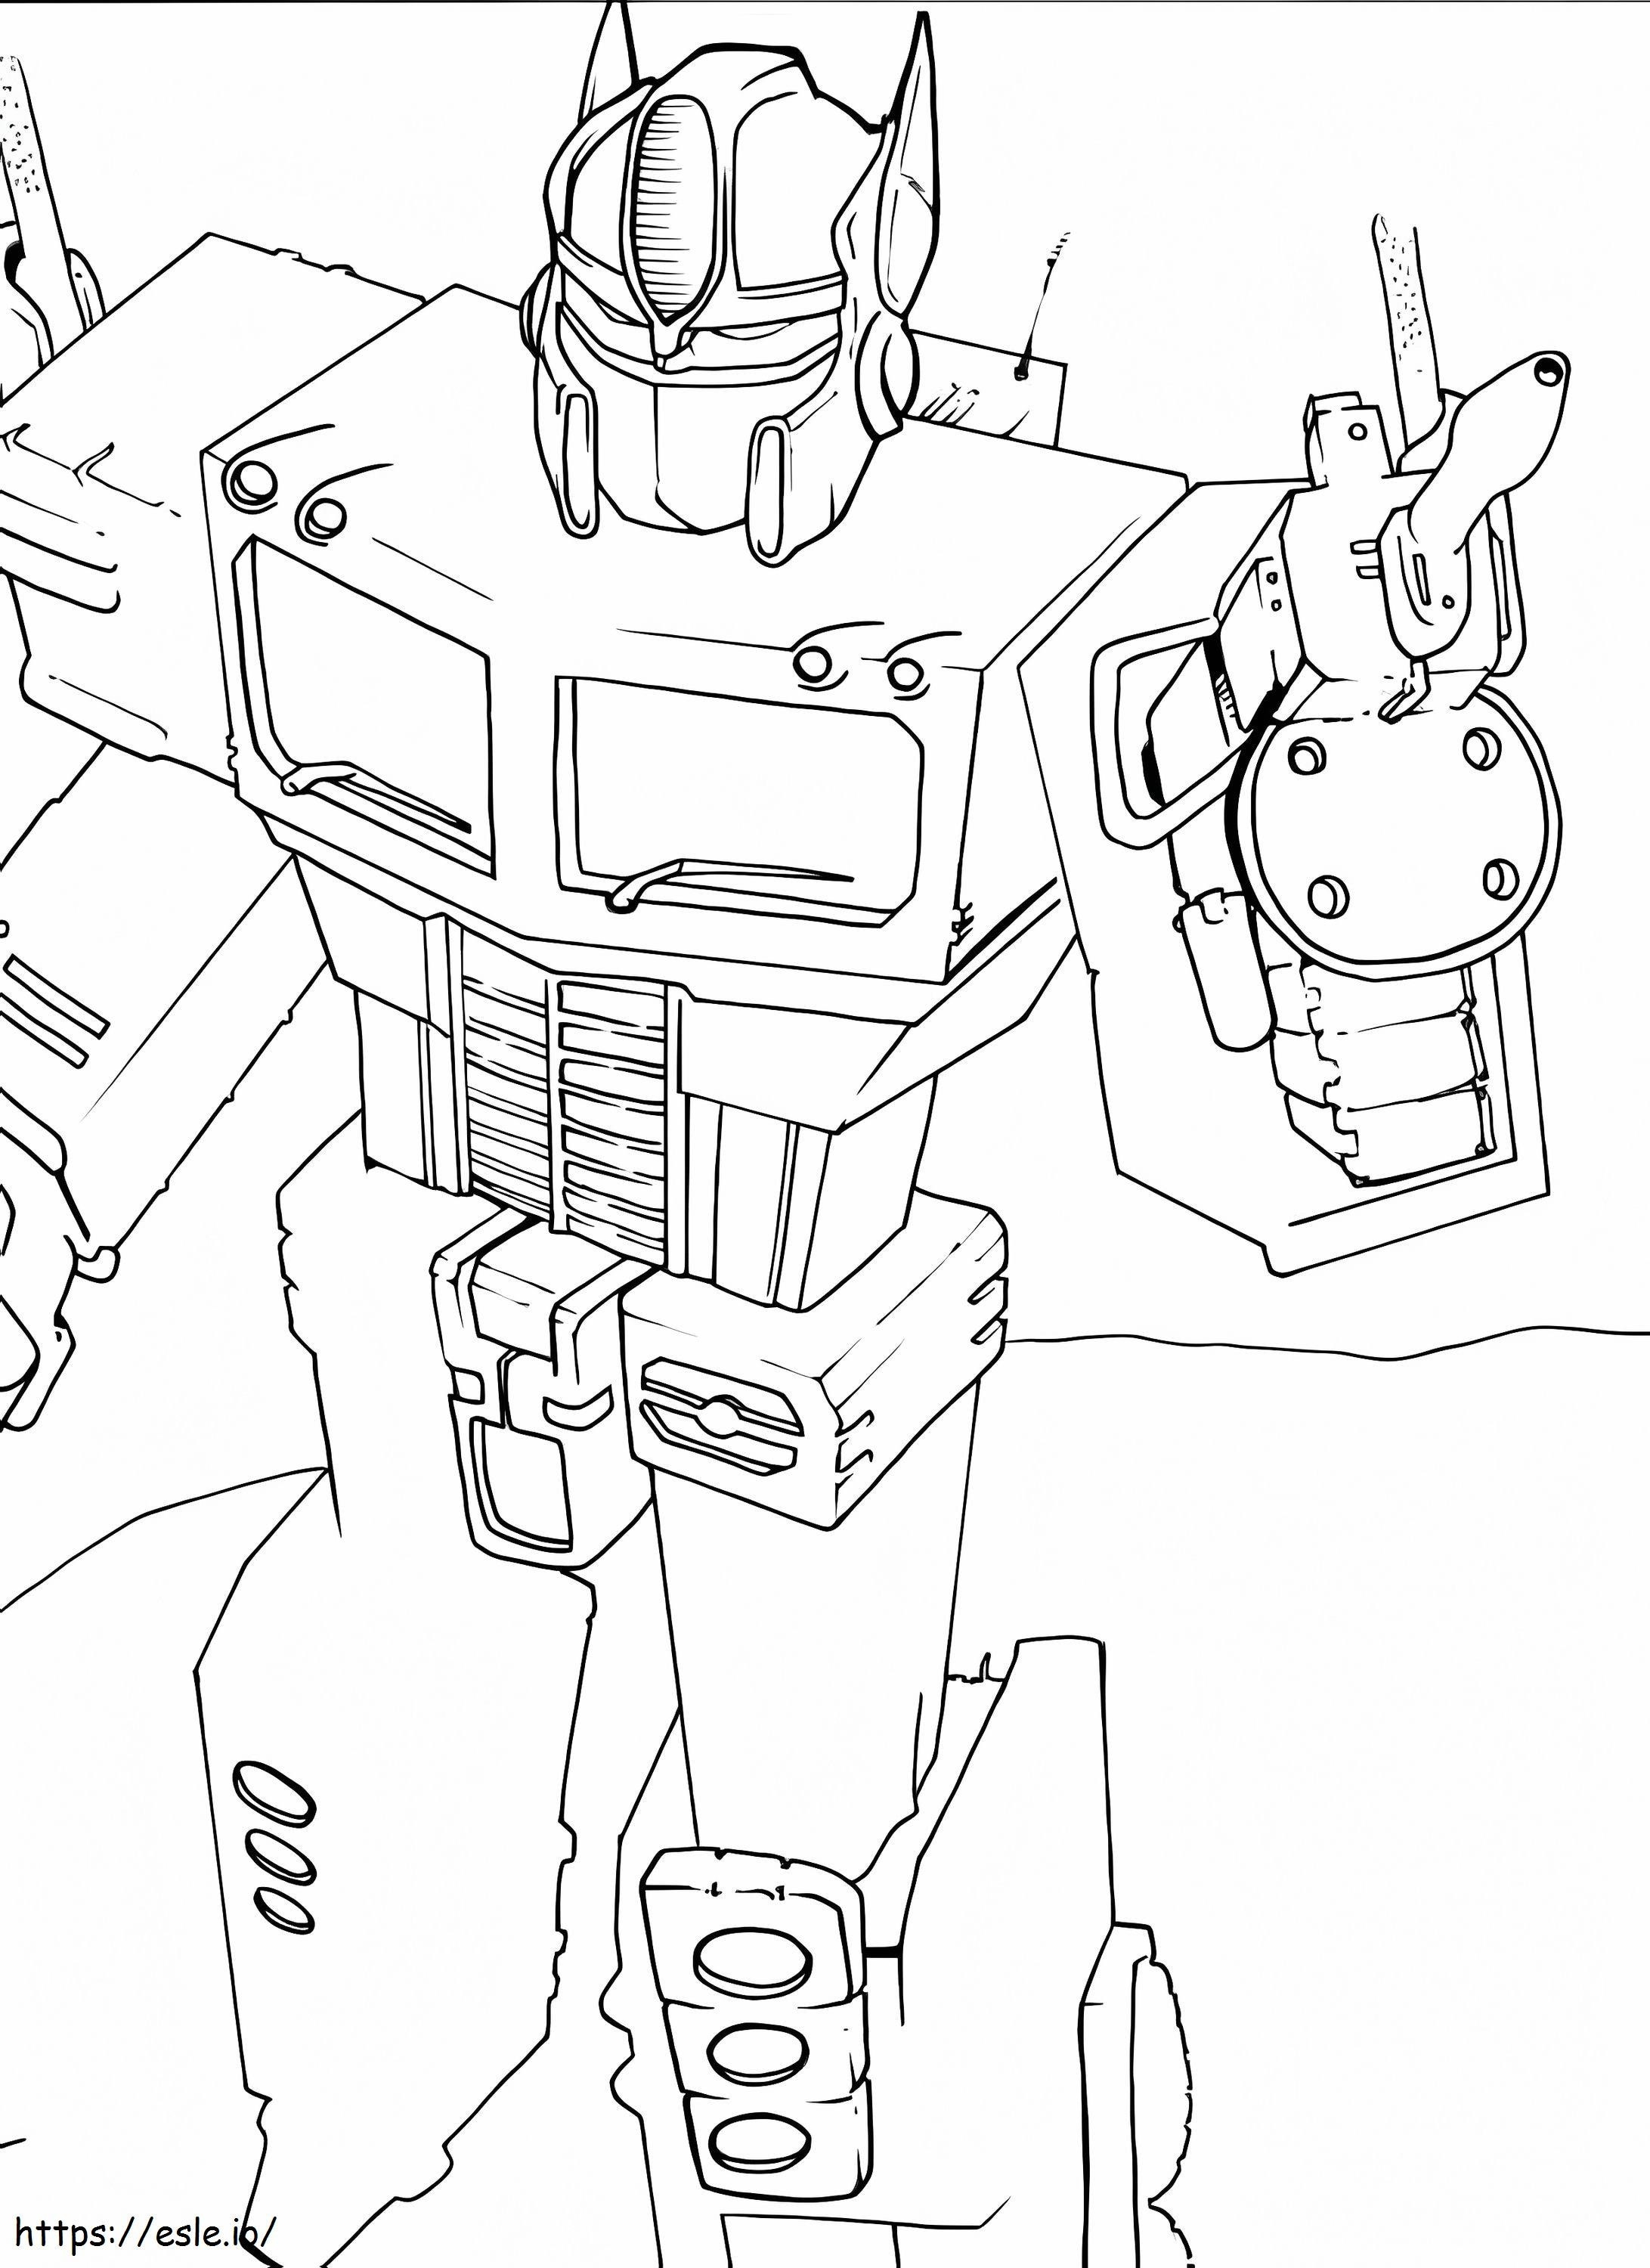 Optimus Prime Holding Gun coloring page